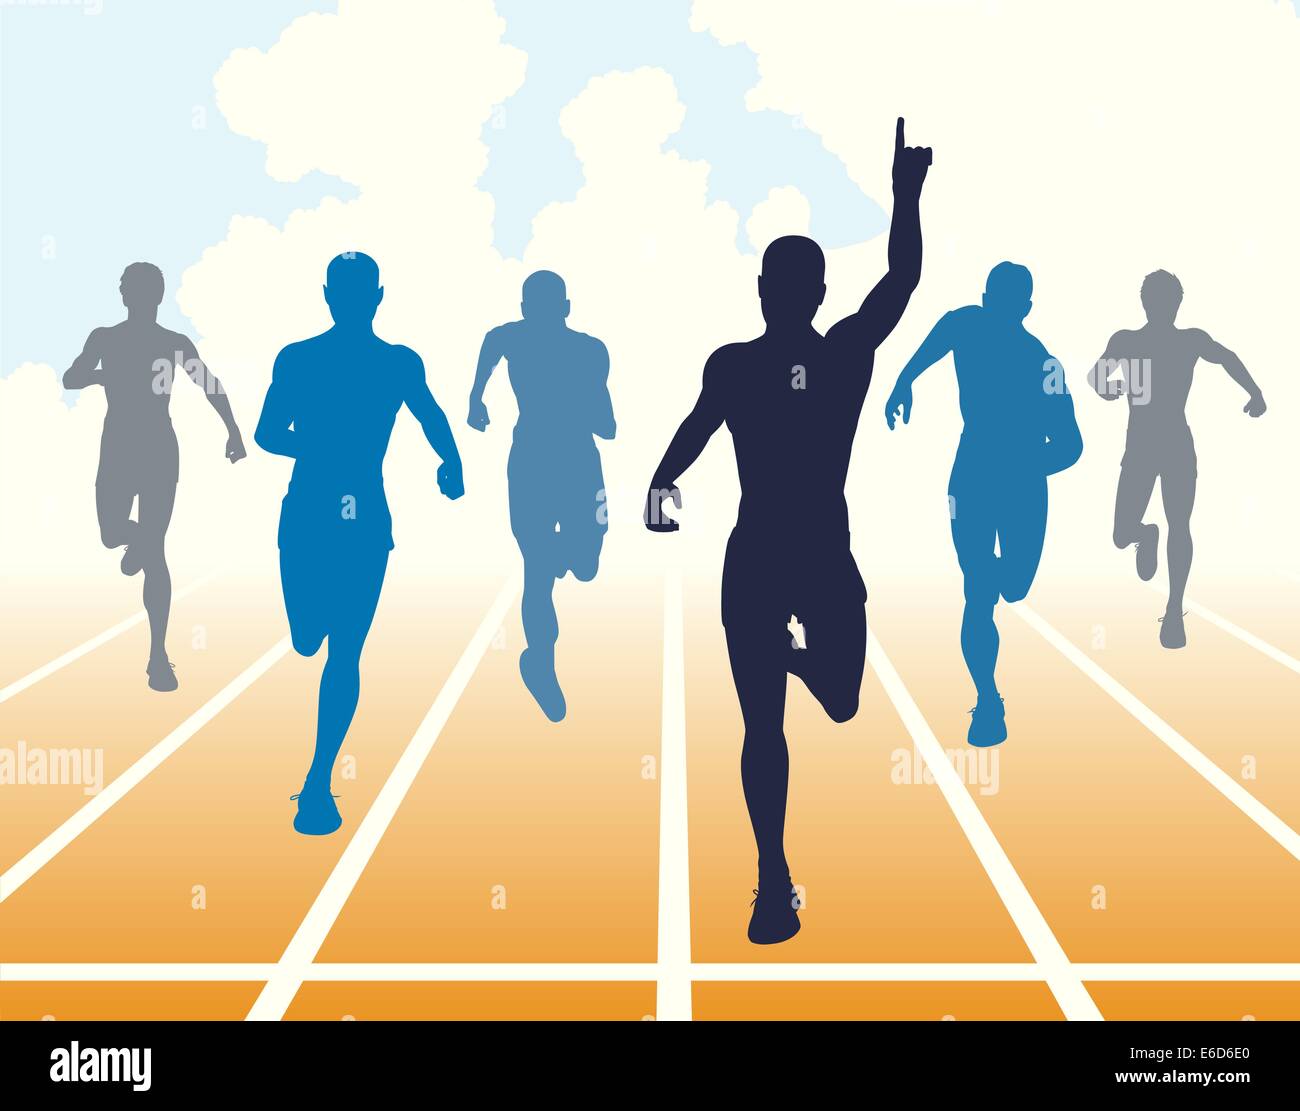 Bearbeitbares Vektor-Illustration von Männern ein Sprintrennen zu beenden Stock Vektor